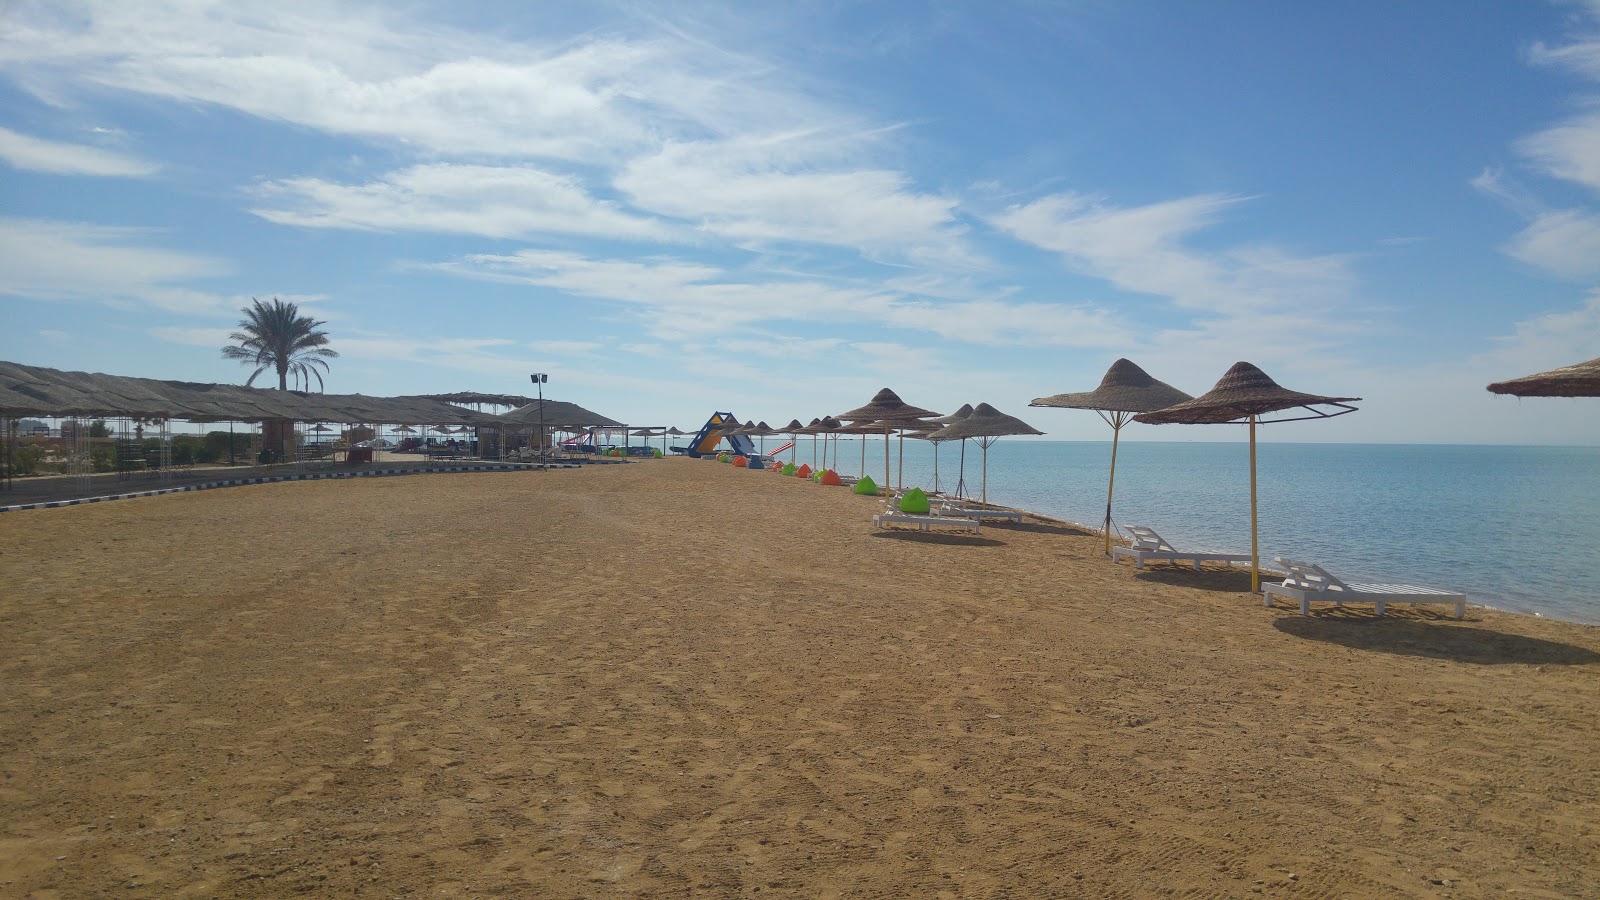 Foto de Ras Sidr beach - lugar popular entre los conocedores del relax